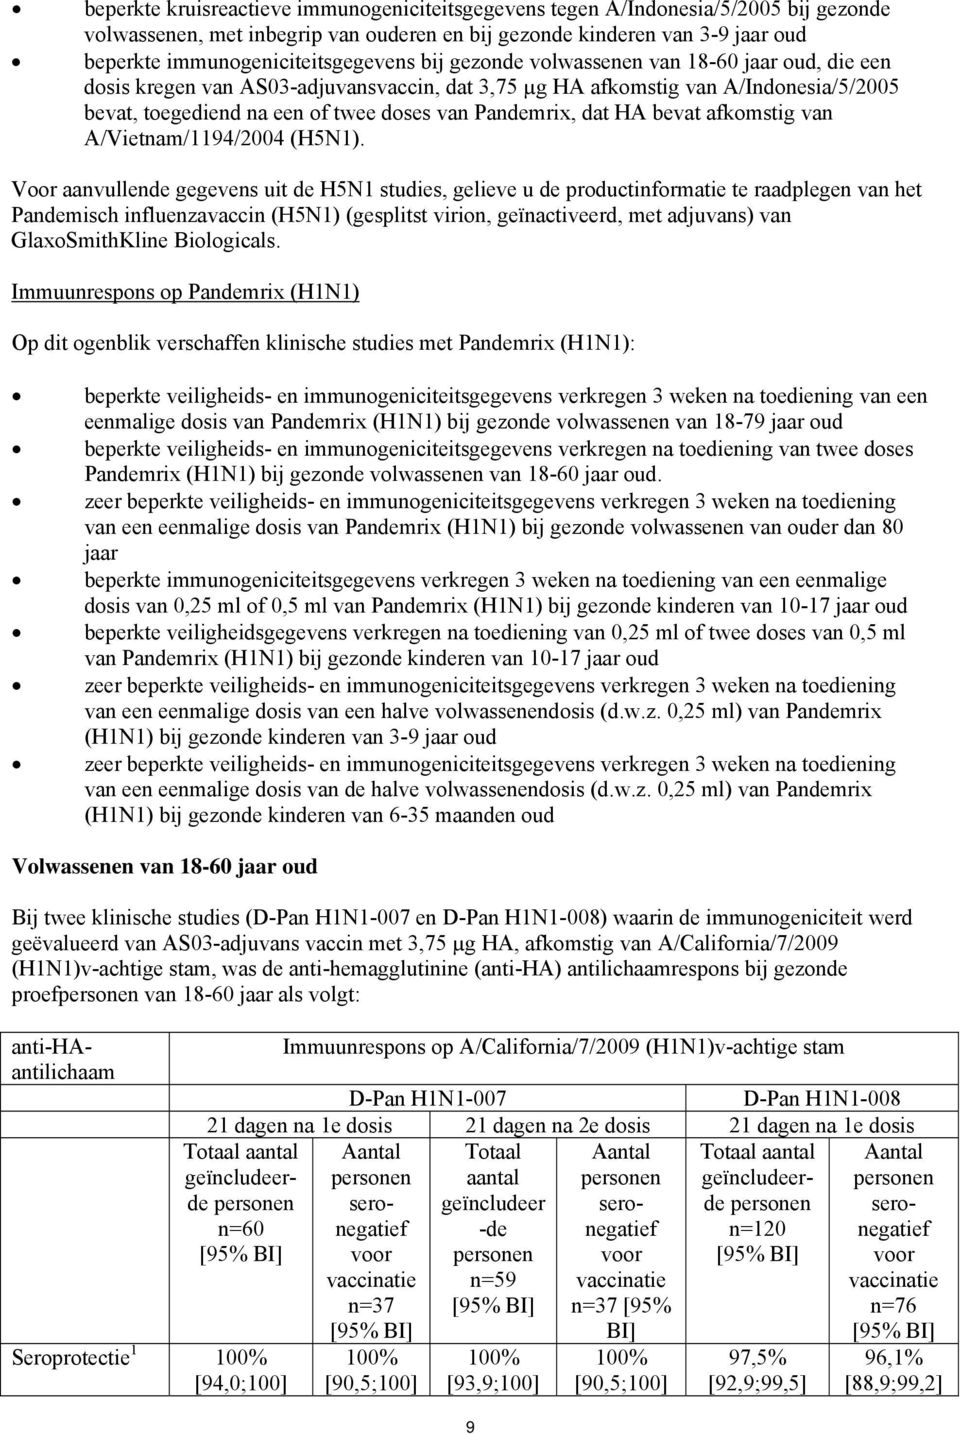 doses van Pandemrix, dat HA bevat afkomstig van A/Vietnam/1194/2004 (H5N1).